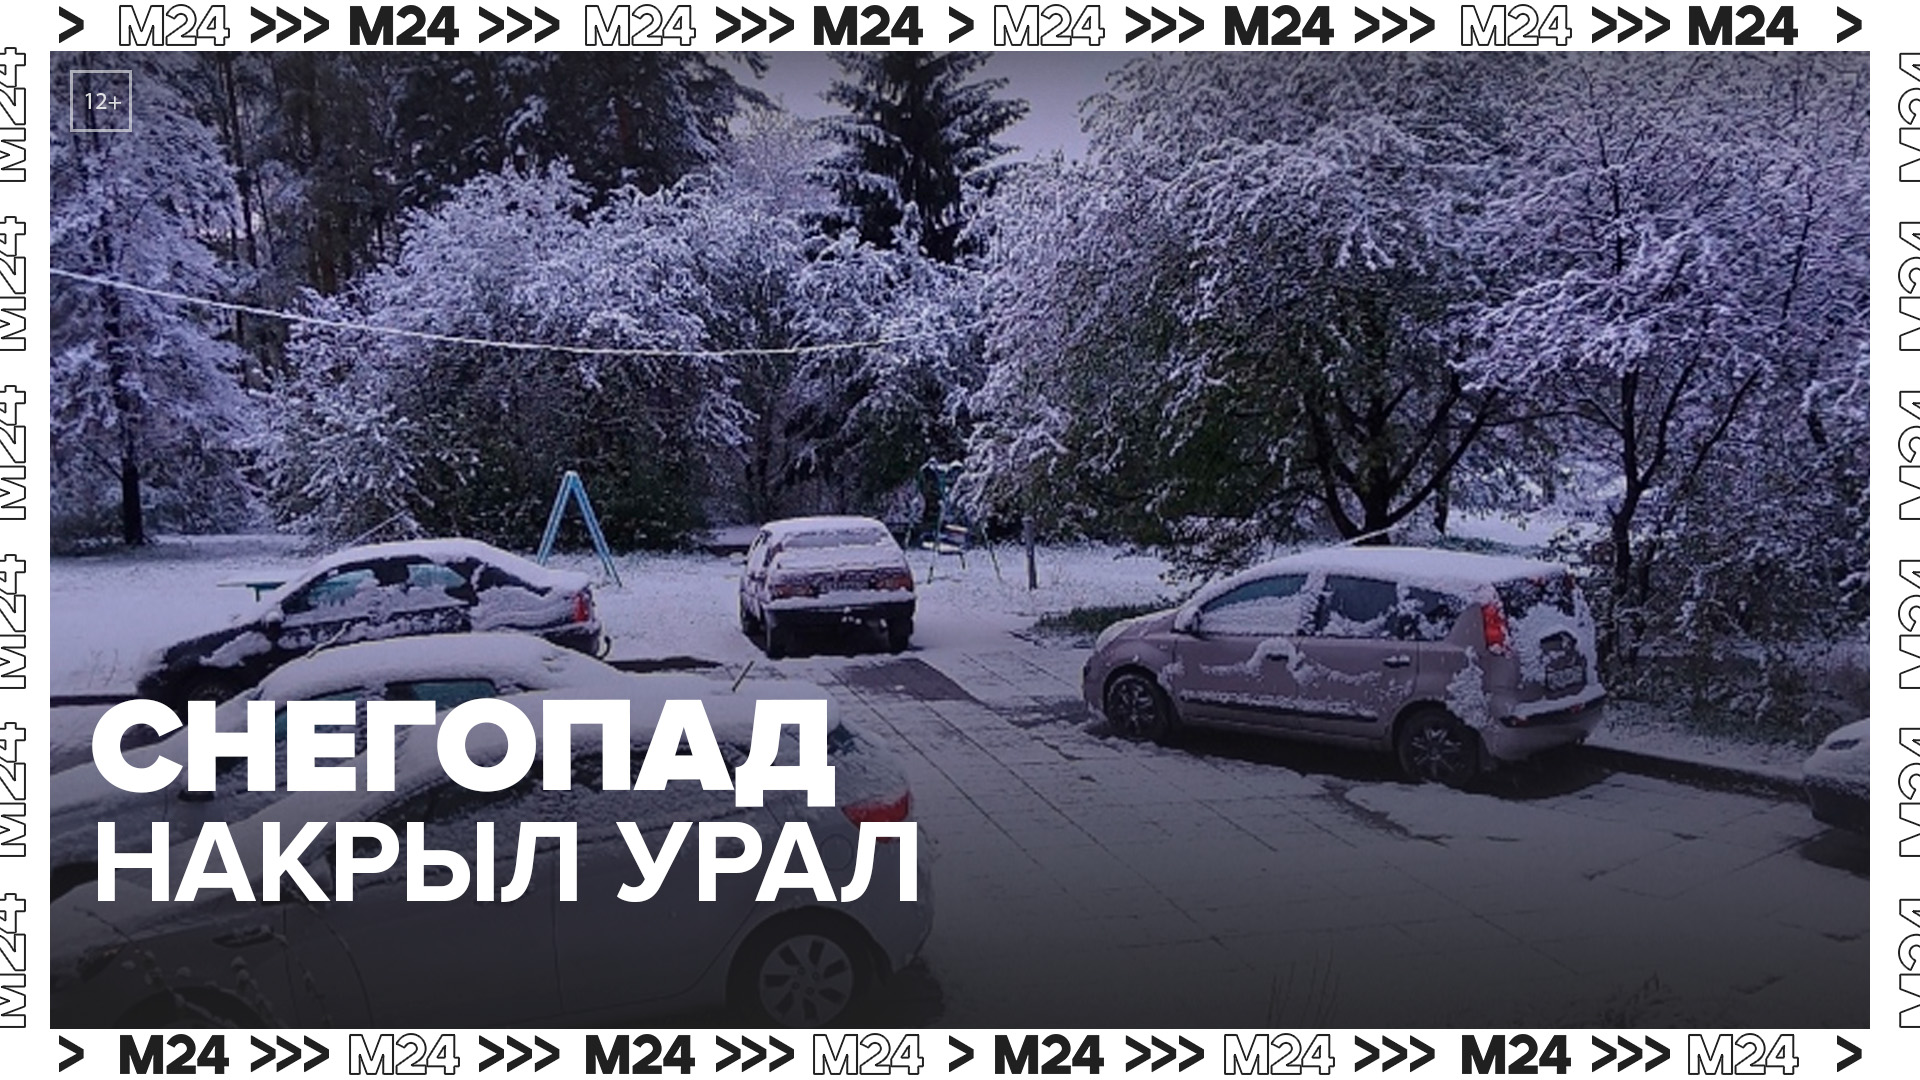 Сильные снегопады накрыли Урал в мае - Москва 24